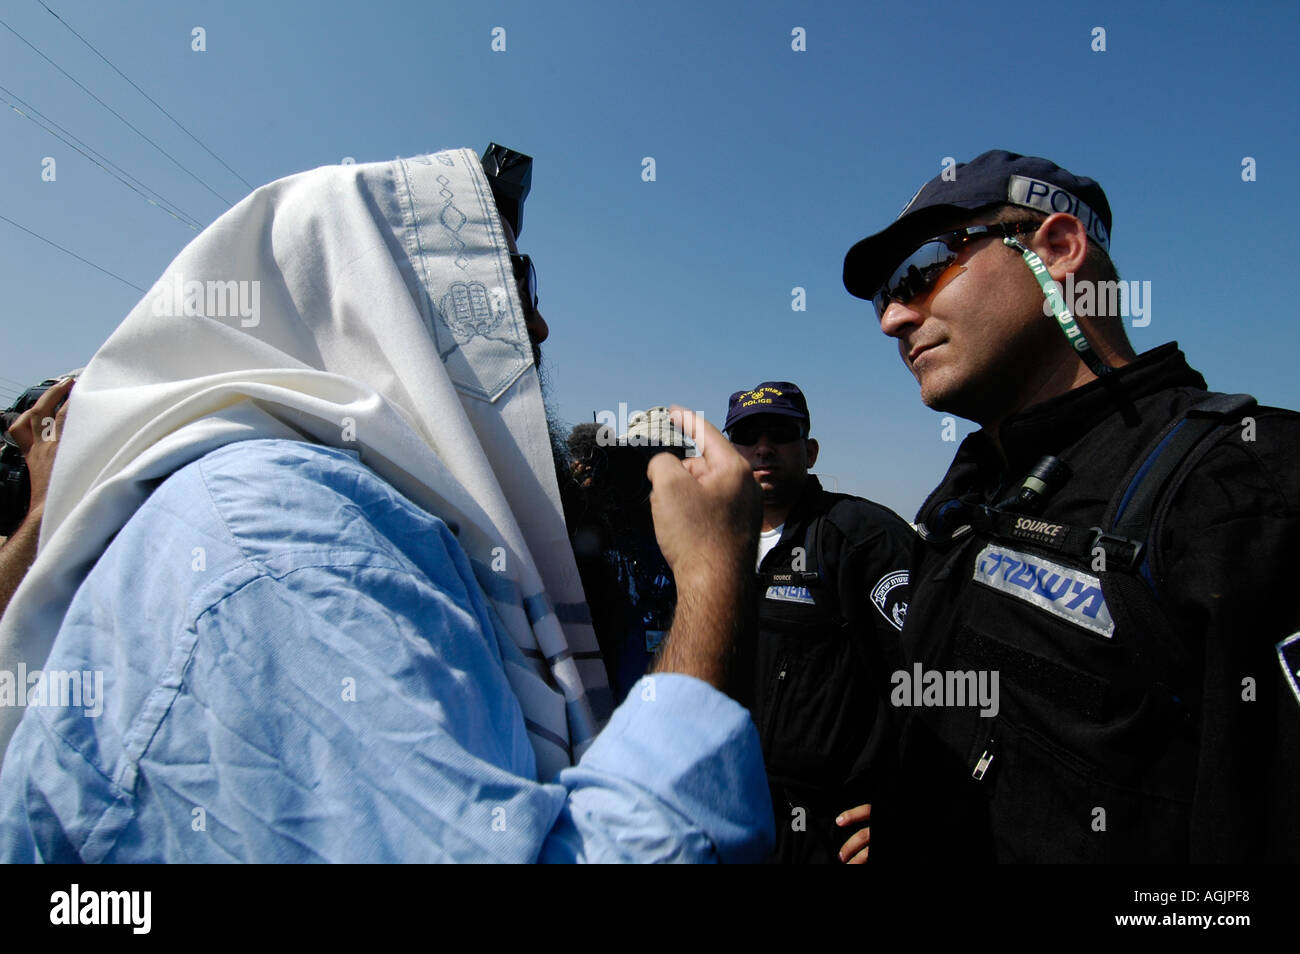 Ein religiöser jüdischer Siedler mit einem Talit Schal und eingewickelt Tfilin konfrontiert die israelische Polizei während der Evakuierung jüdischer Siedlungen aus Gaza Streifen Stockfoto